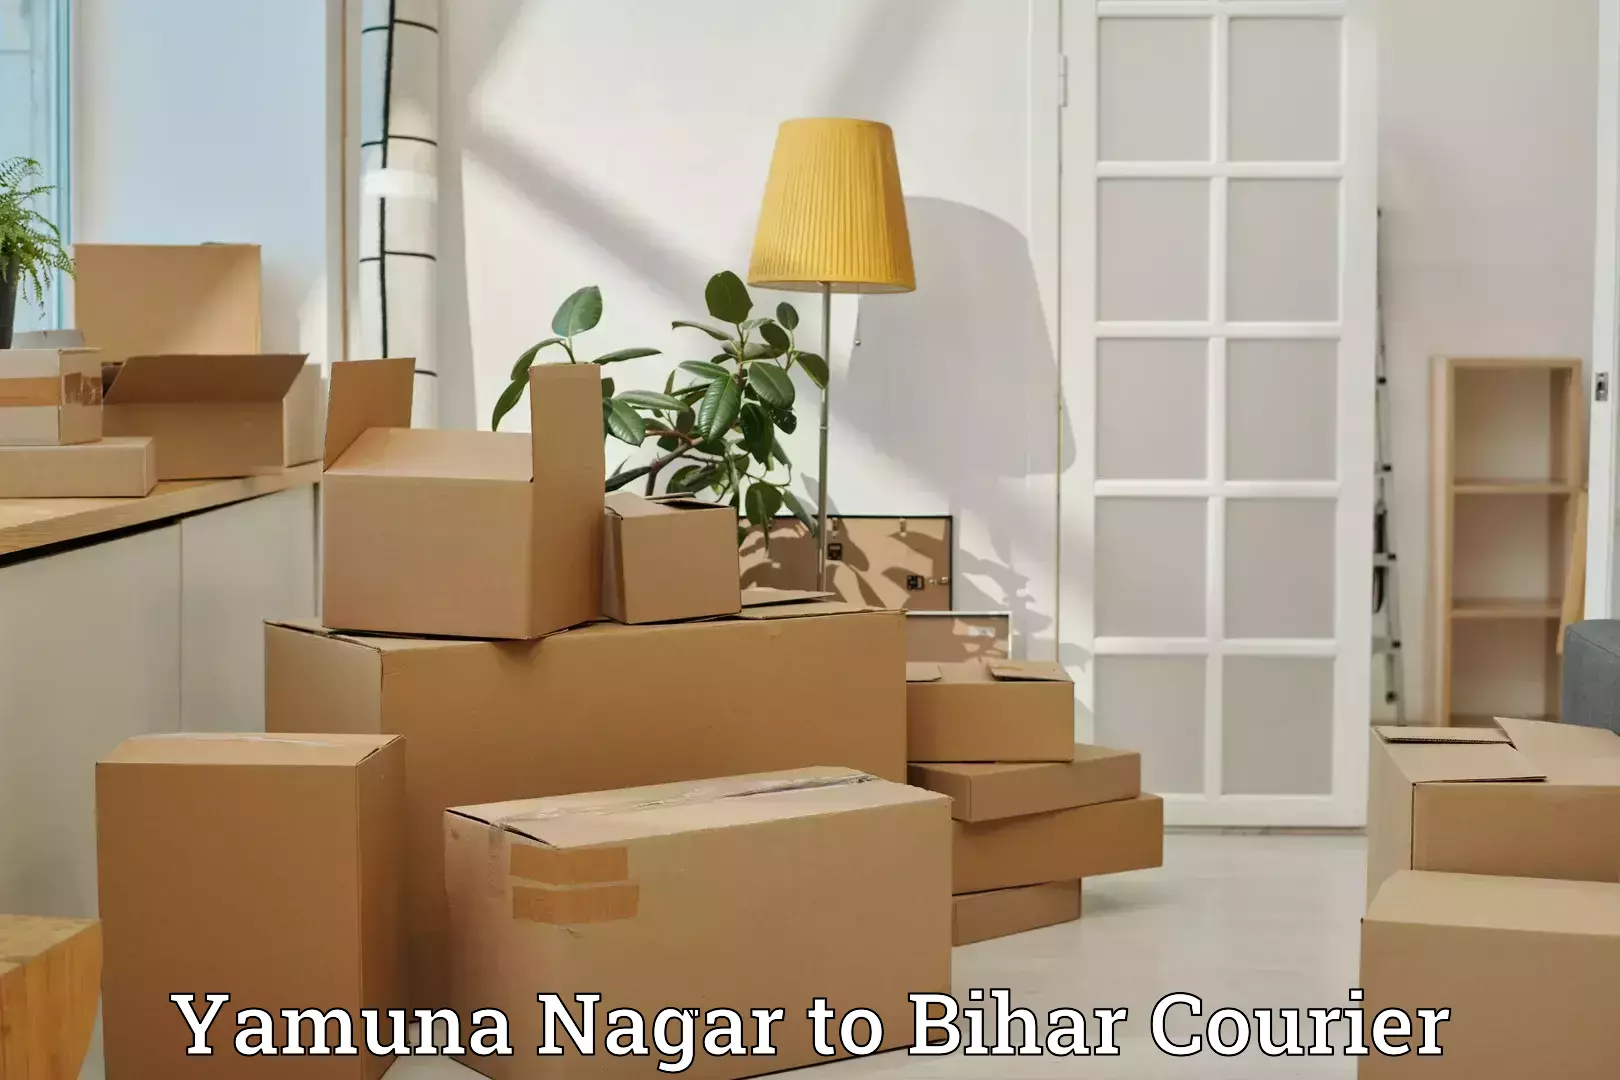 Flexible luggage courier service Yamuna Nagar to Bihar